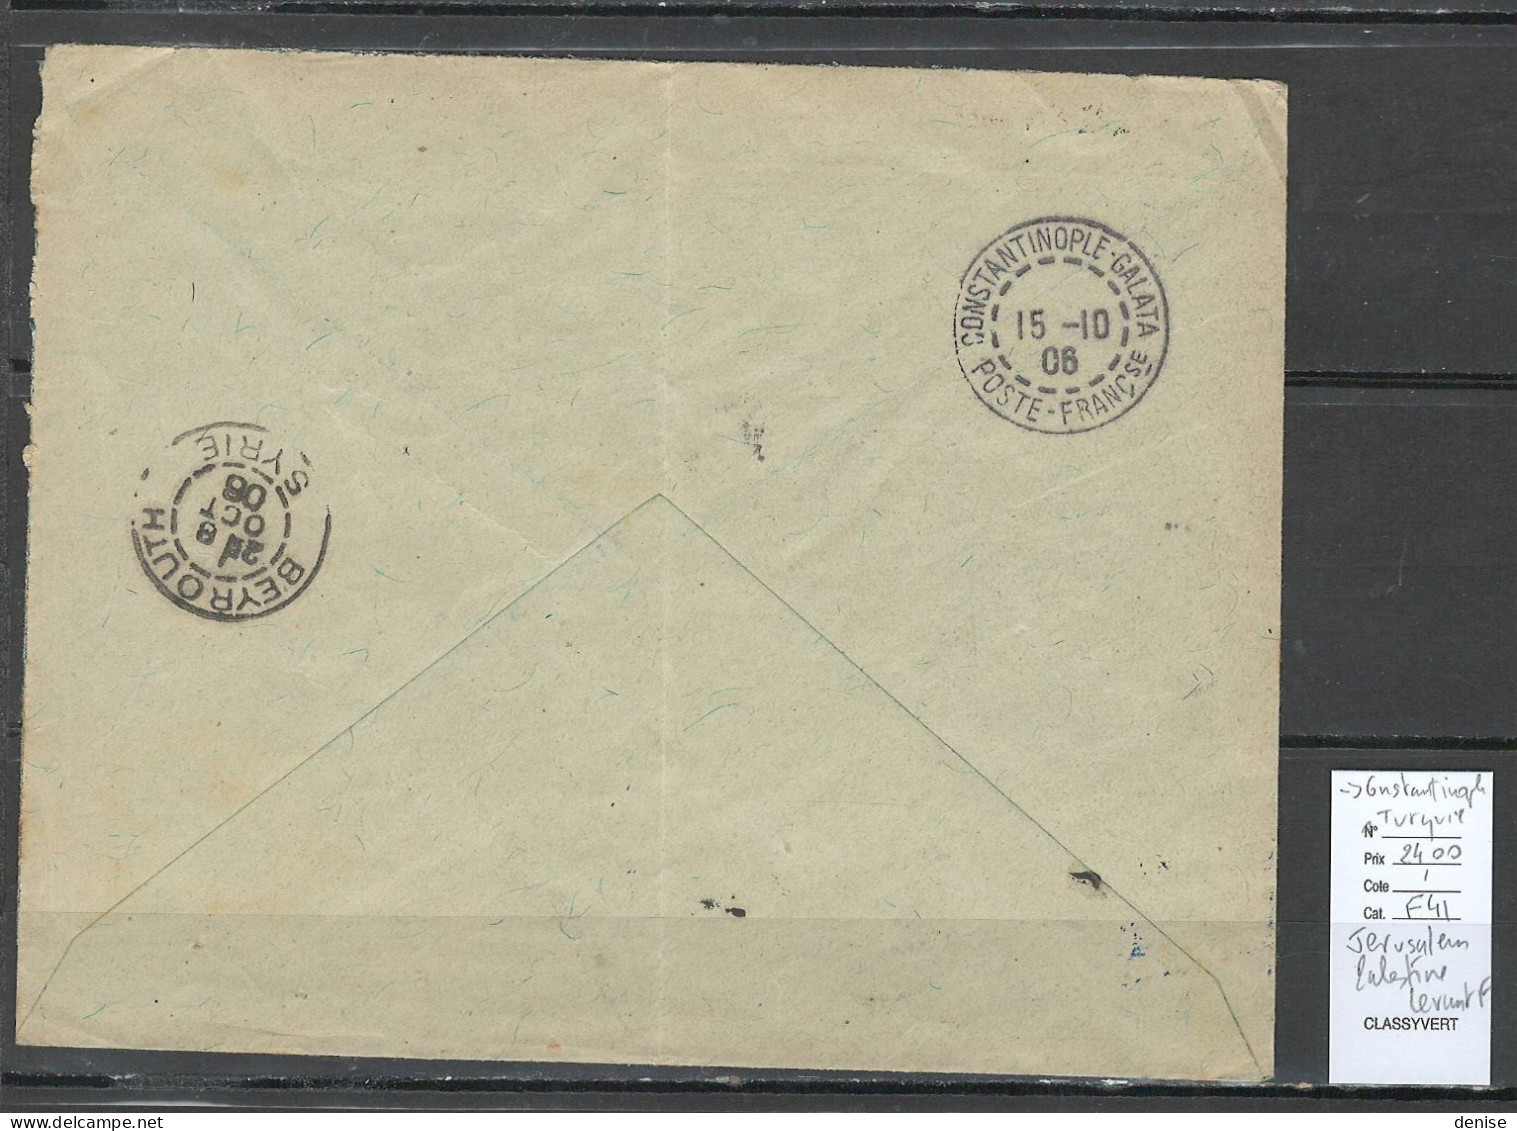 Levant - Lettre  Jerusalem Bureau Français - 1906 -pour Constantinople - Lettres & Documents